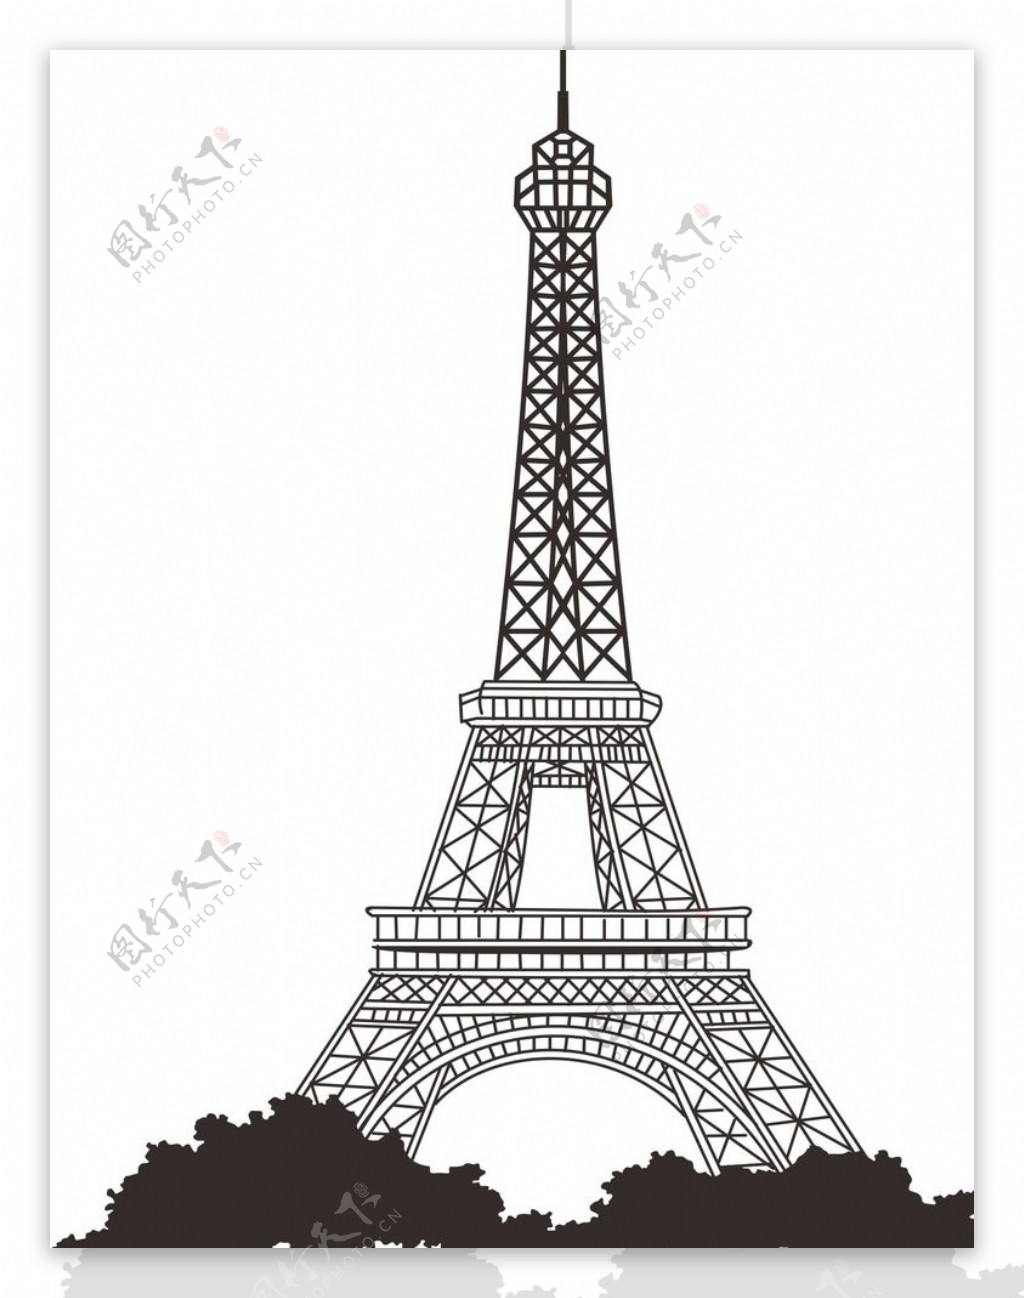 巴黎铁塔矢量素材